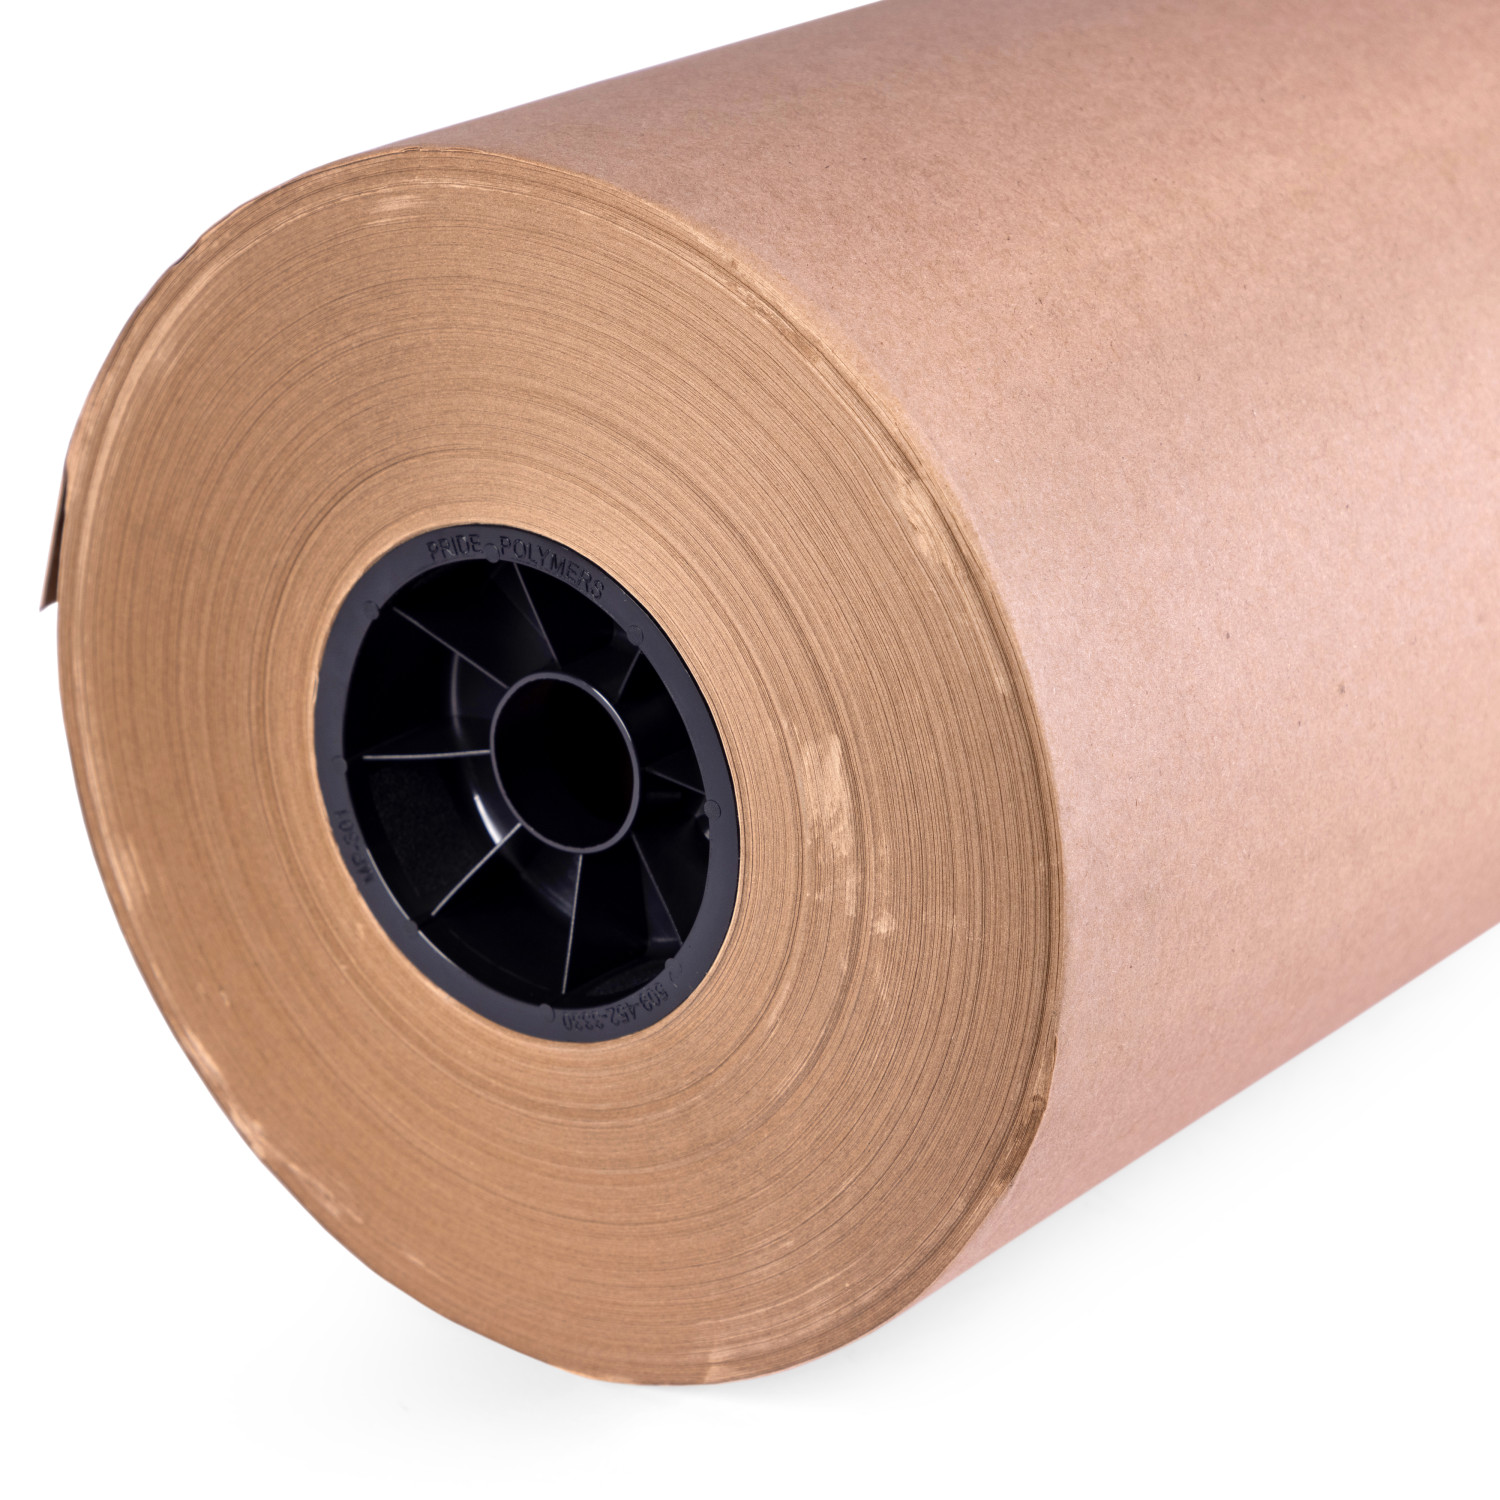 36 x 180' Natural Kraft Paper Roll, 30 lbs (1, 2, 4, 6 rolls) buy